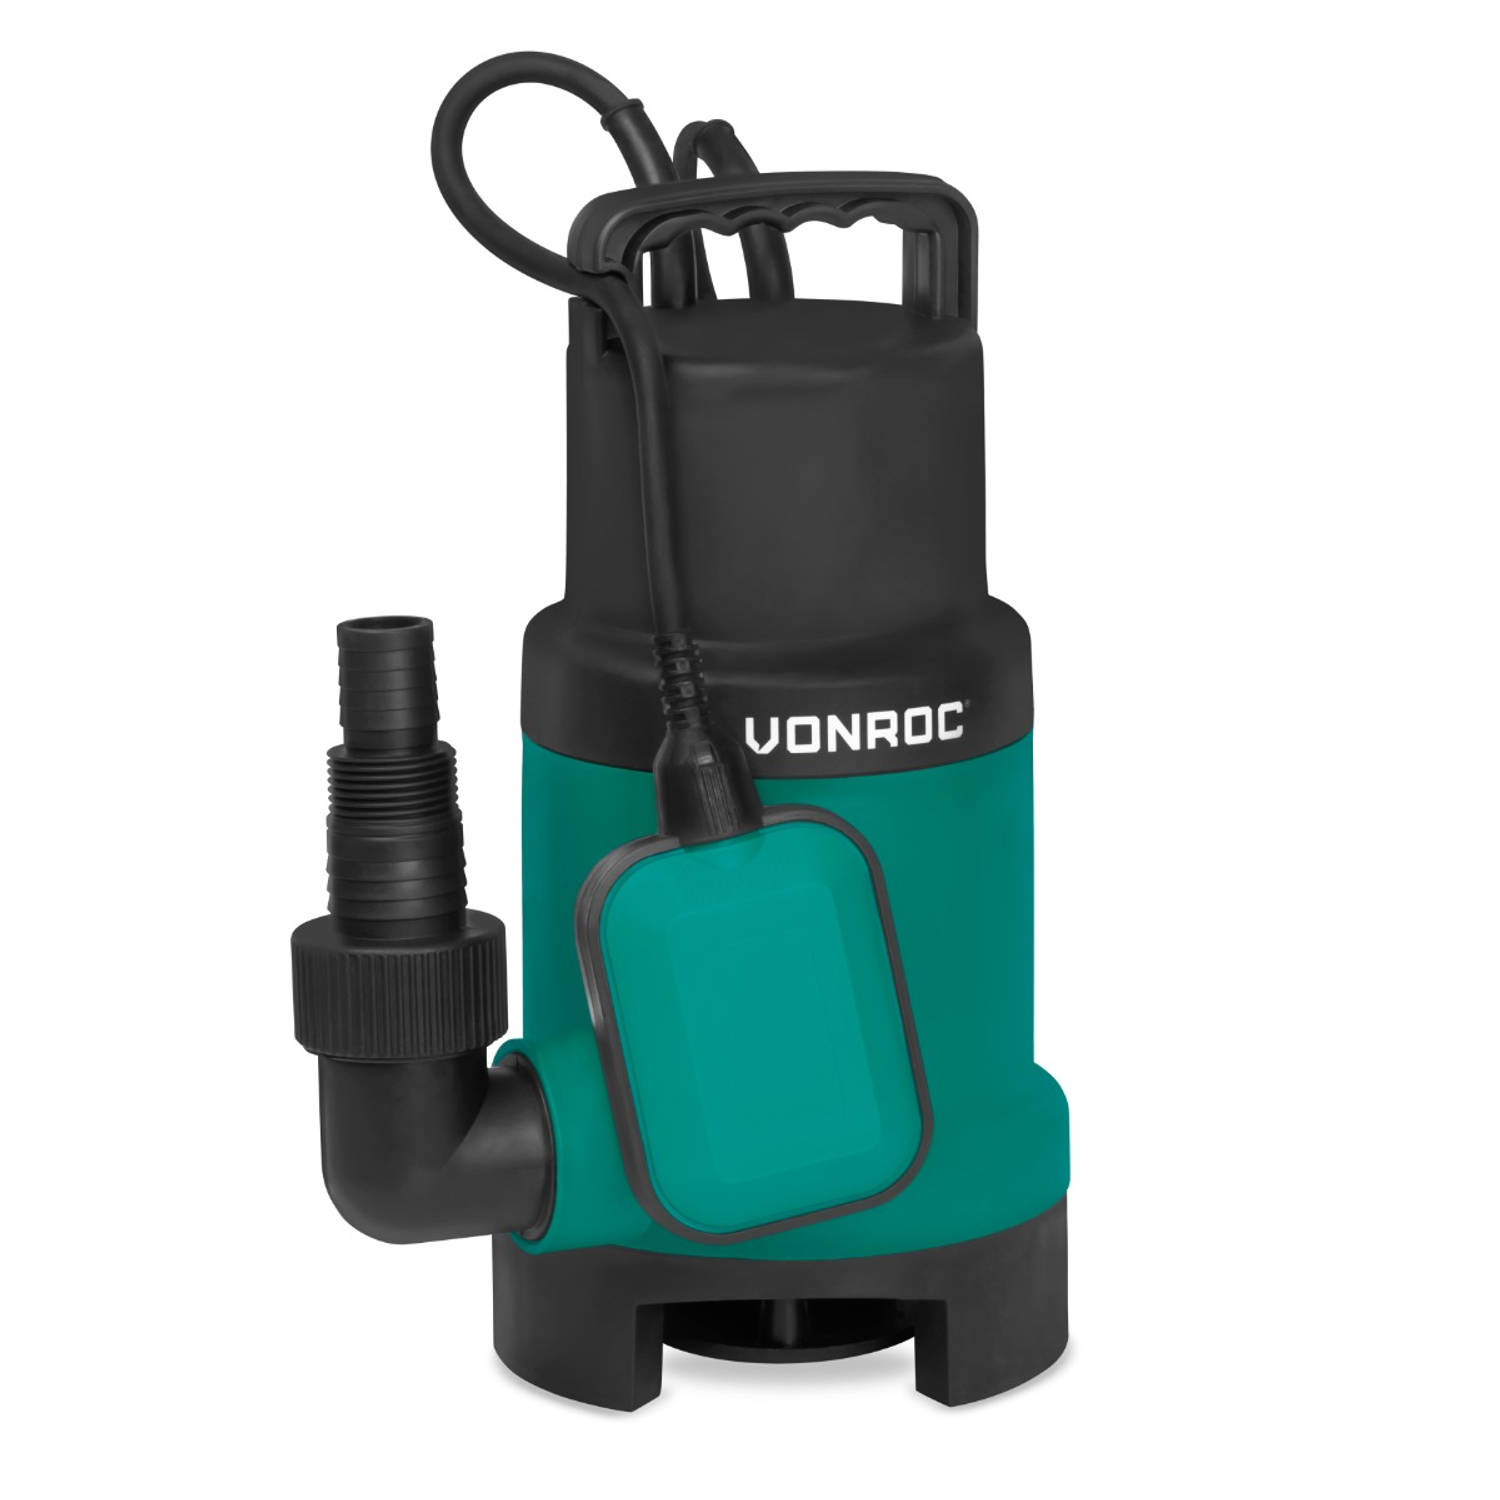 VONROC Dompelpomp - Waterpomp - 900W - 16000 l/h - Voor vuil- en schoonwater - Met vlotter